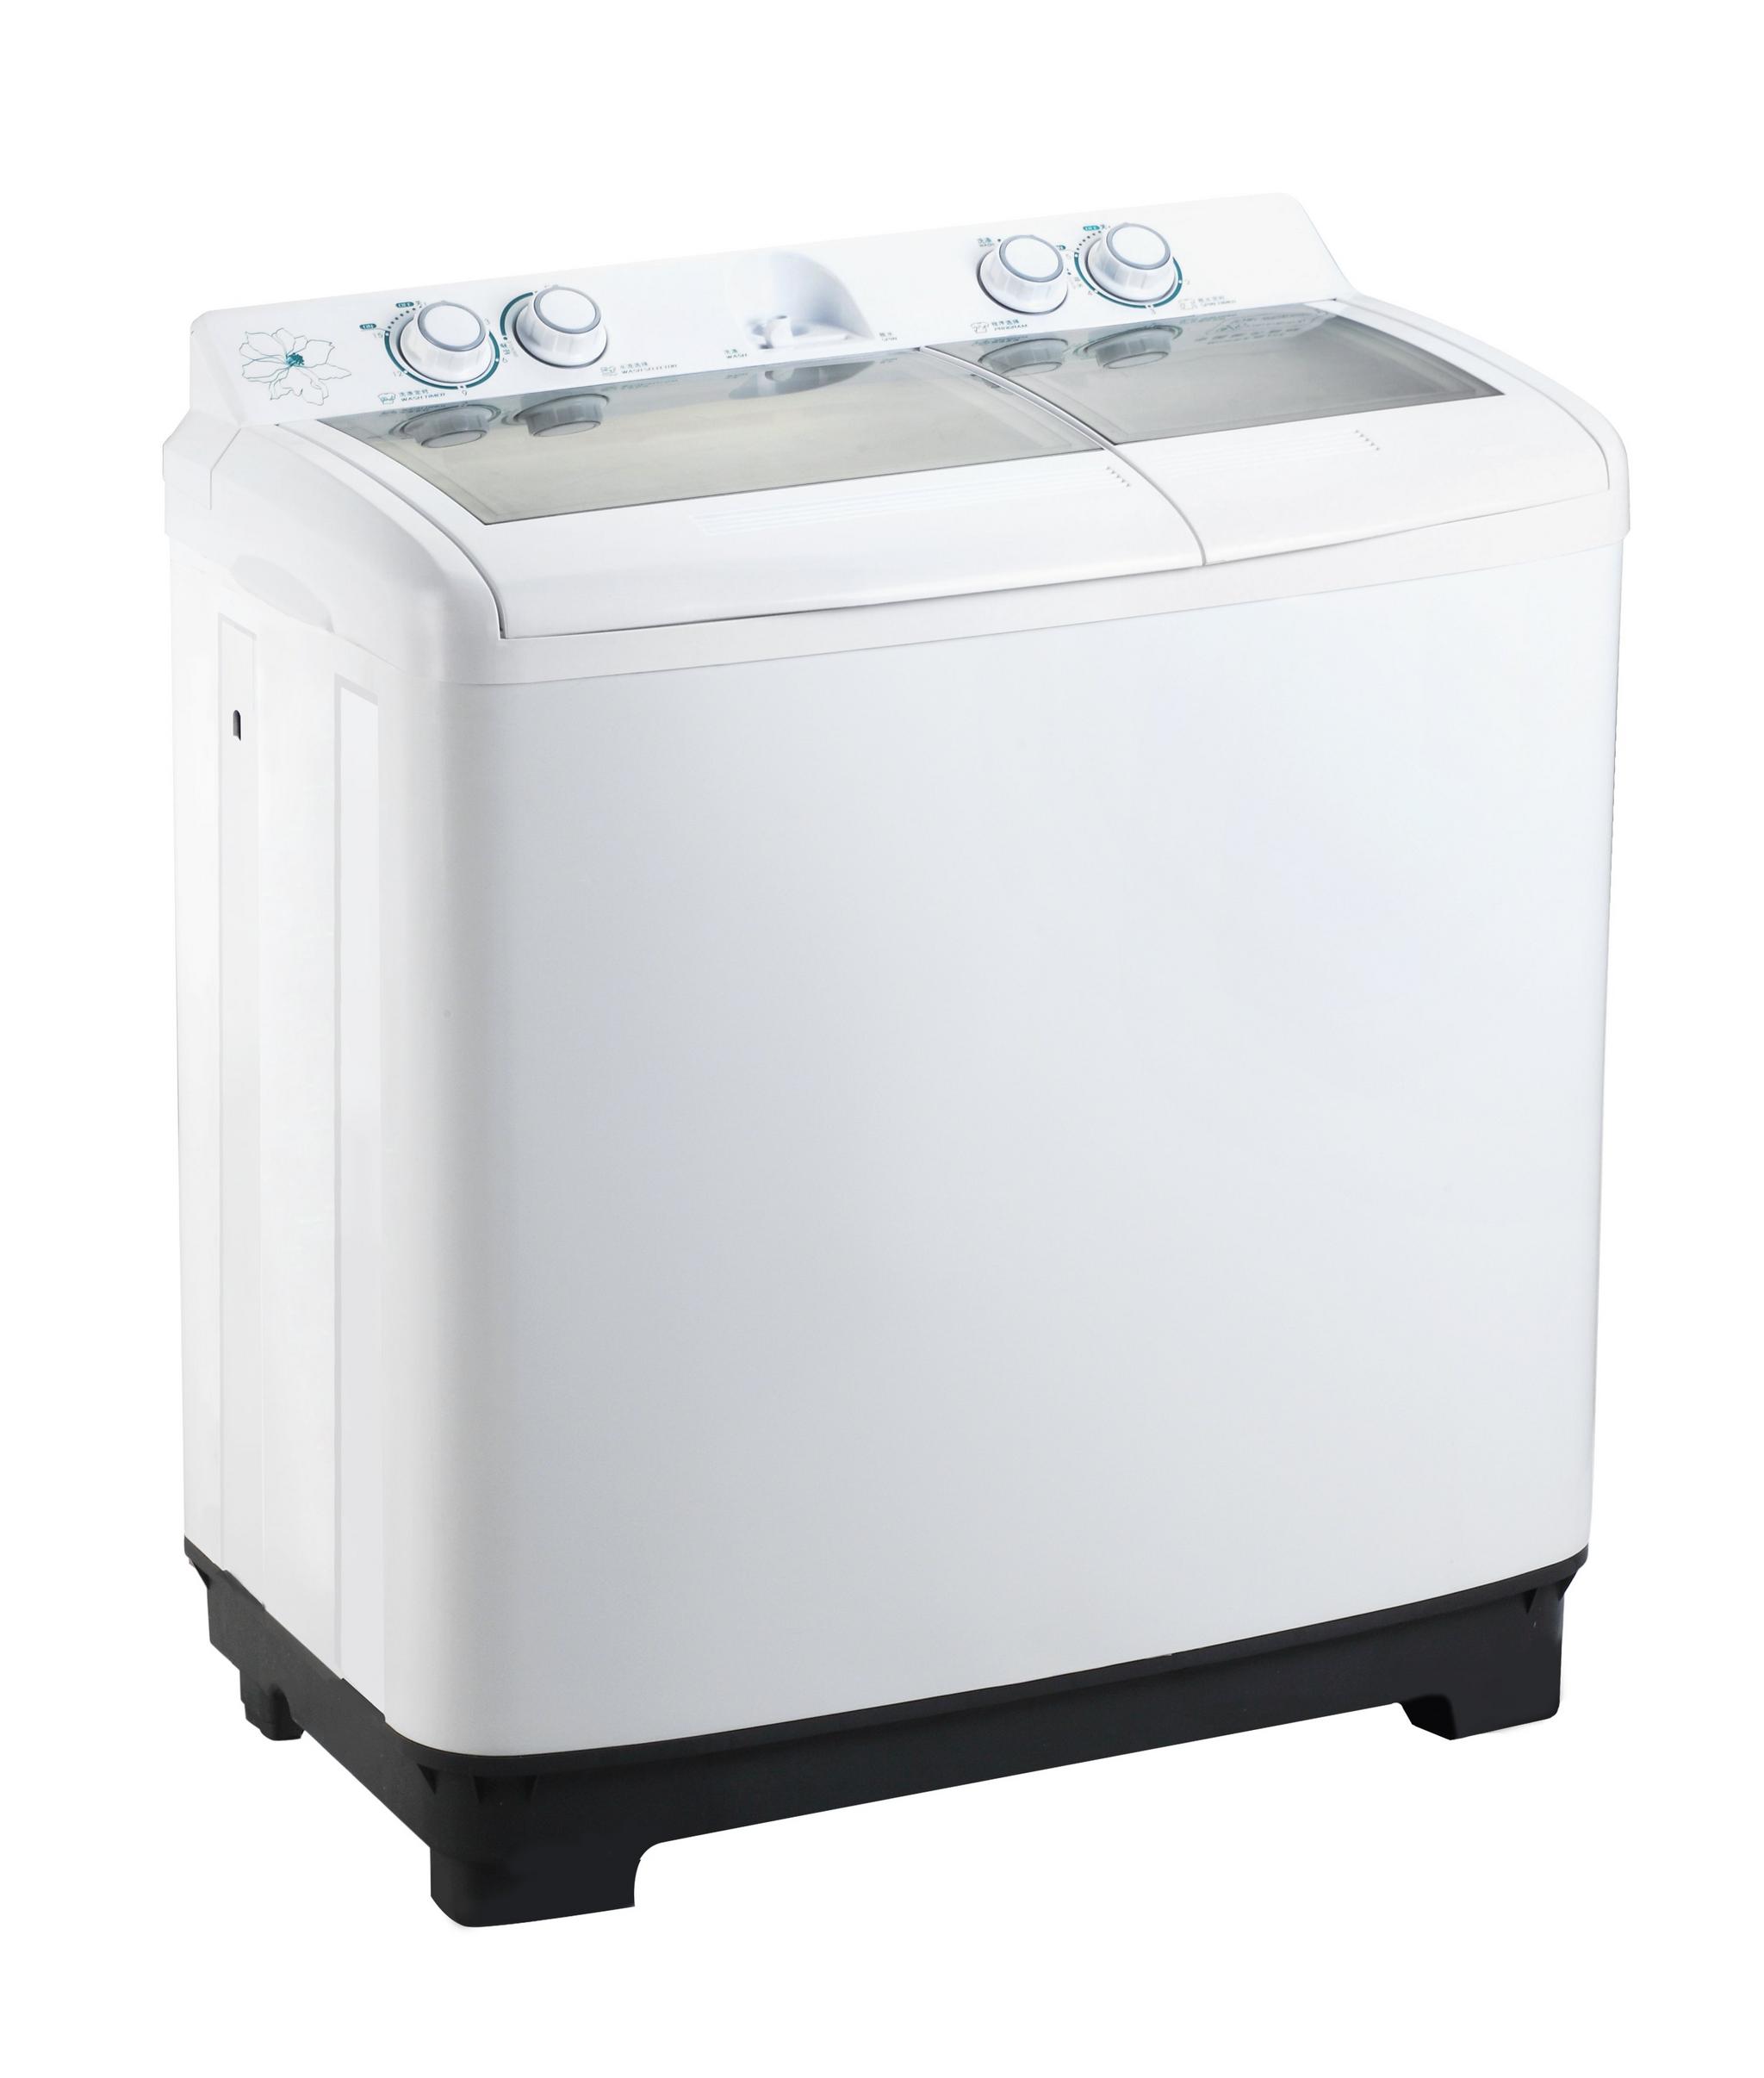 Wansa Gold Twin Tub Washing Machine, 10Kg Washing Capacity, WGTT10-T4AWHT-C12 - White